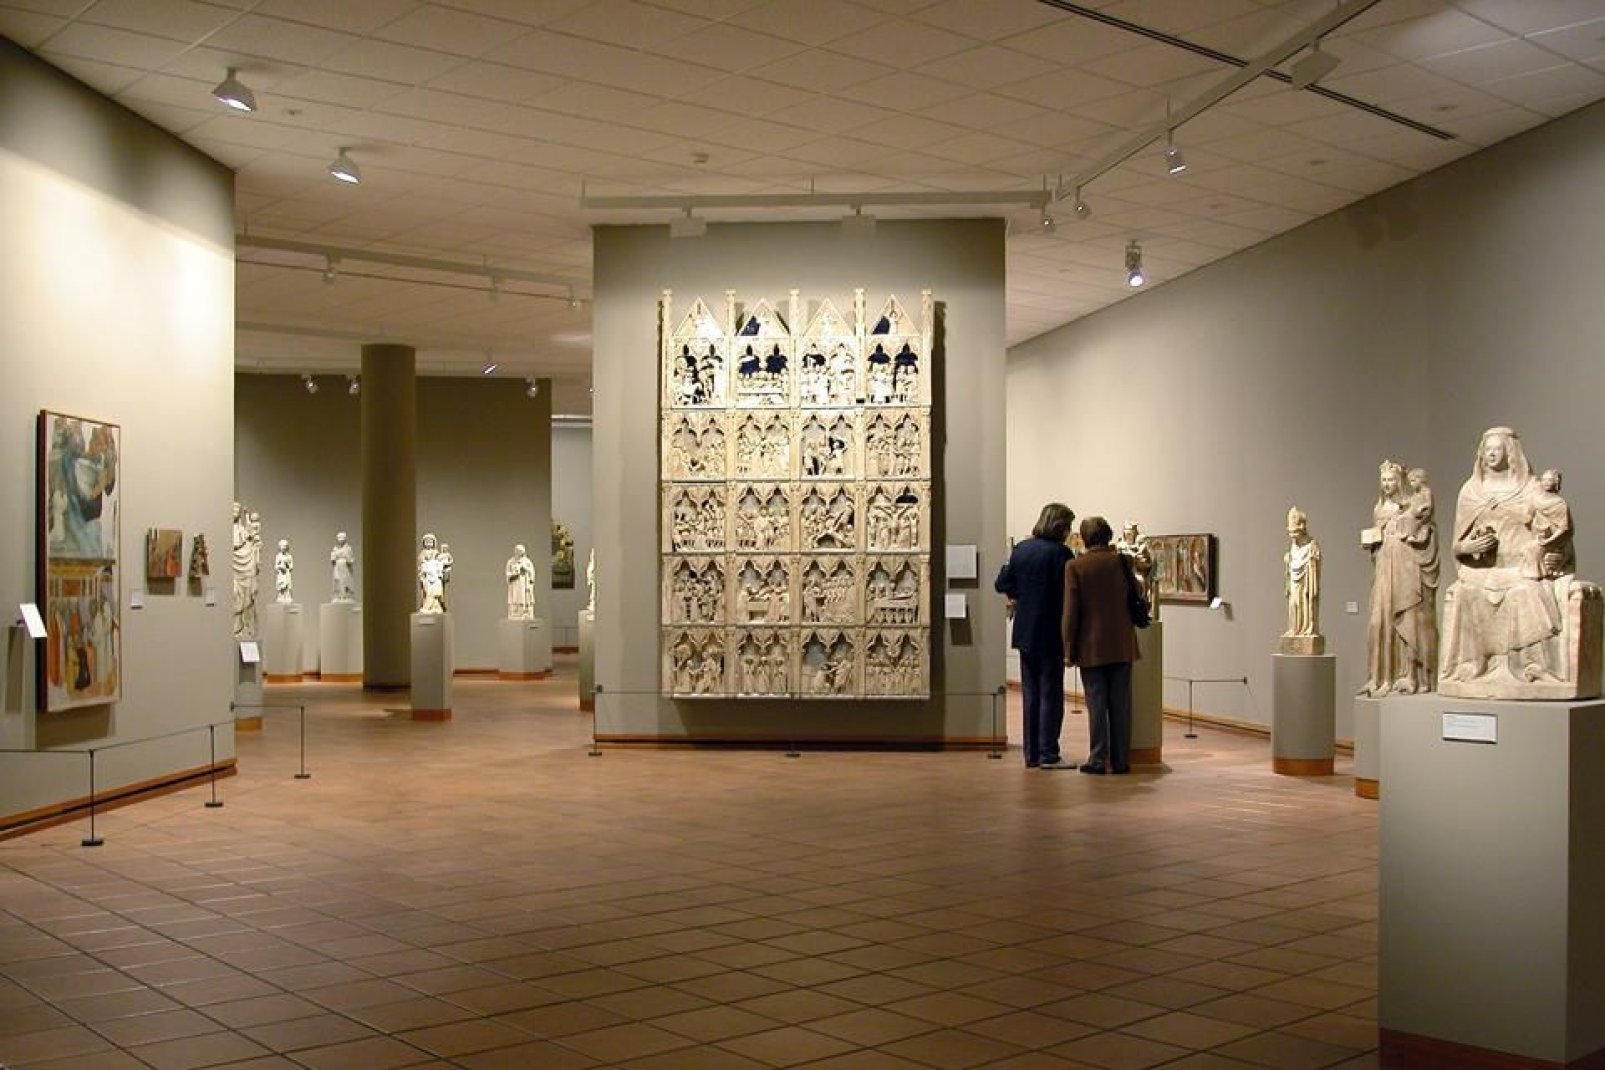 Il abrite la deuxième plus importante collection d'art roman catalan du pays.